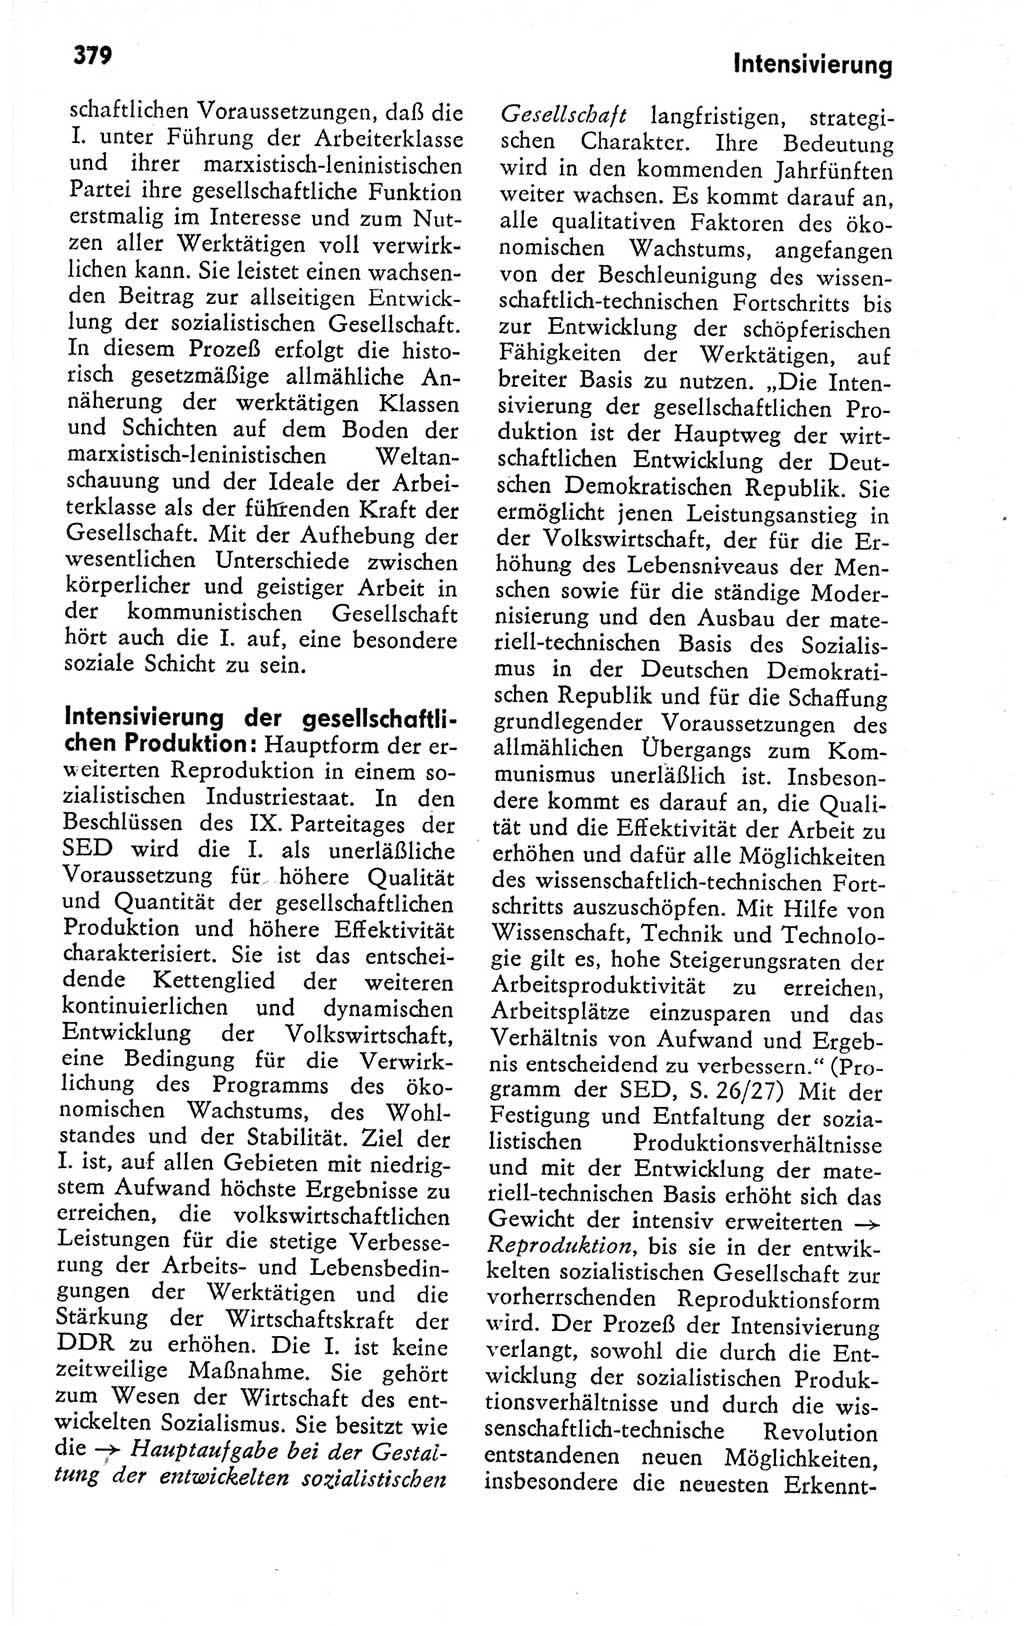 Kleines politisches Wörterbuch [Deutsche Demokratische Republik (DDR)] 1978, Seite 379 (Kl. pol. Wb. DDR 1978, S. 379)